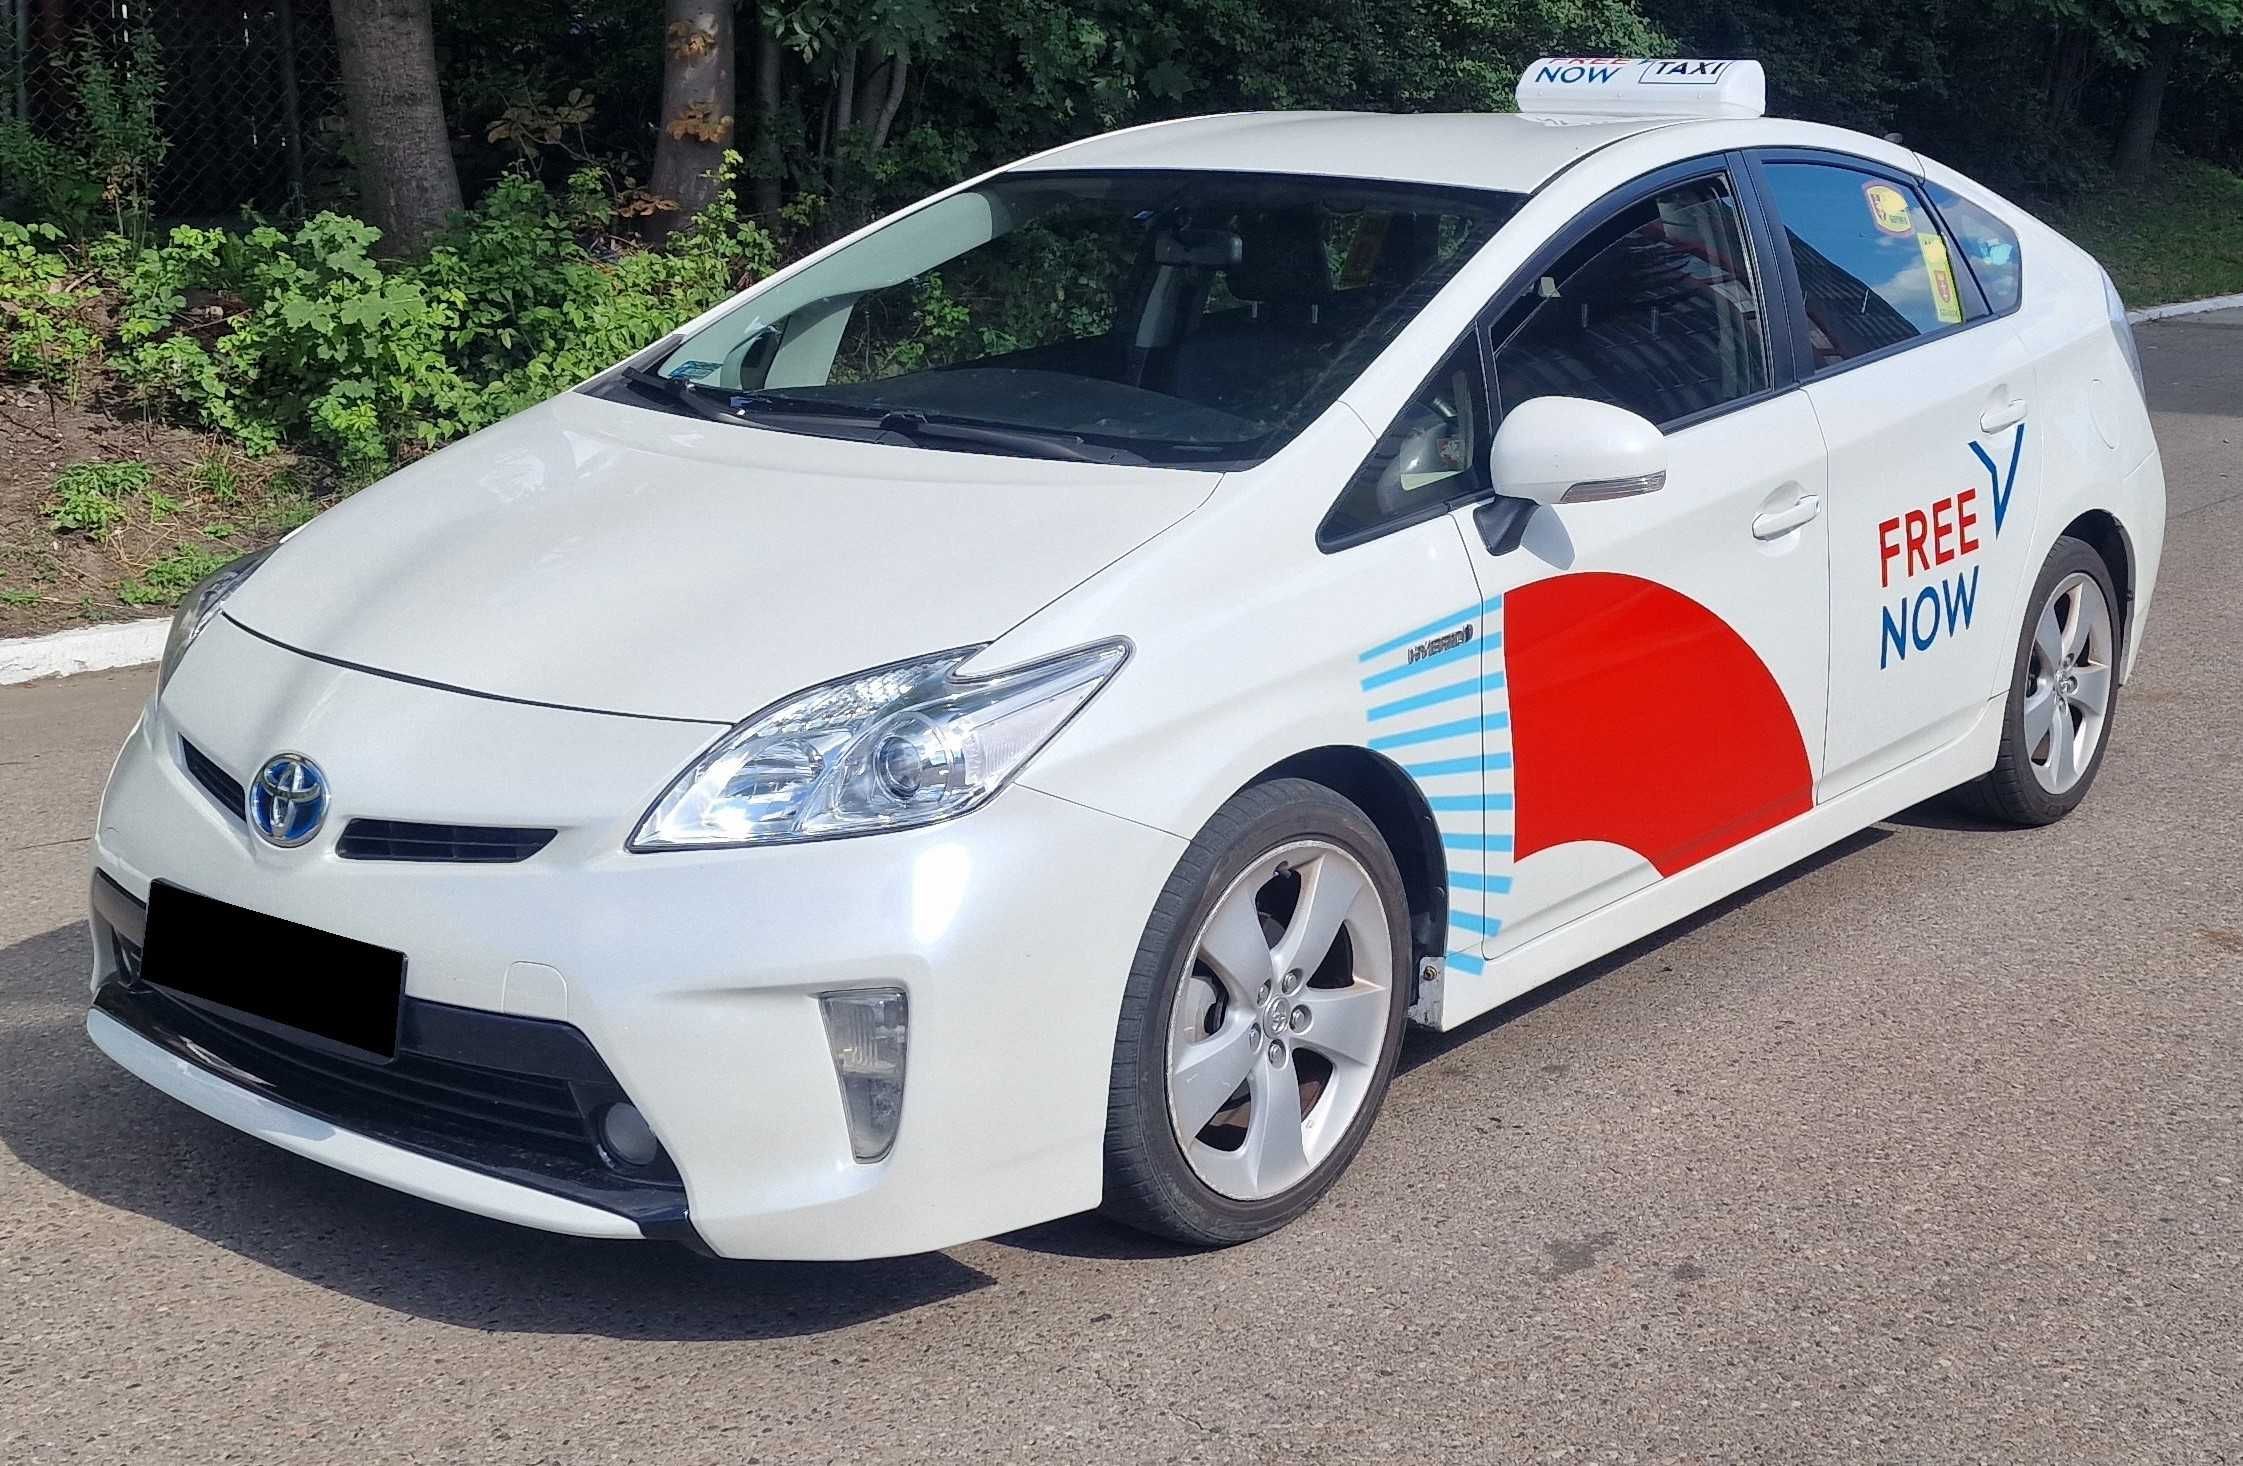 WYPOŻYCZALNIA samochodów WYNAJEM Toyota Prius LPG Uber Bolt Free NOW